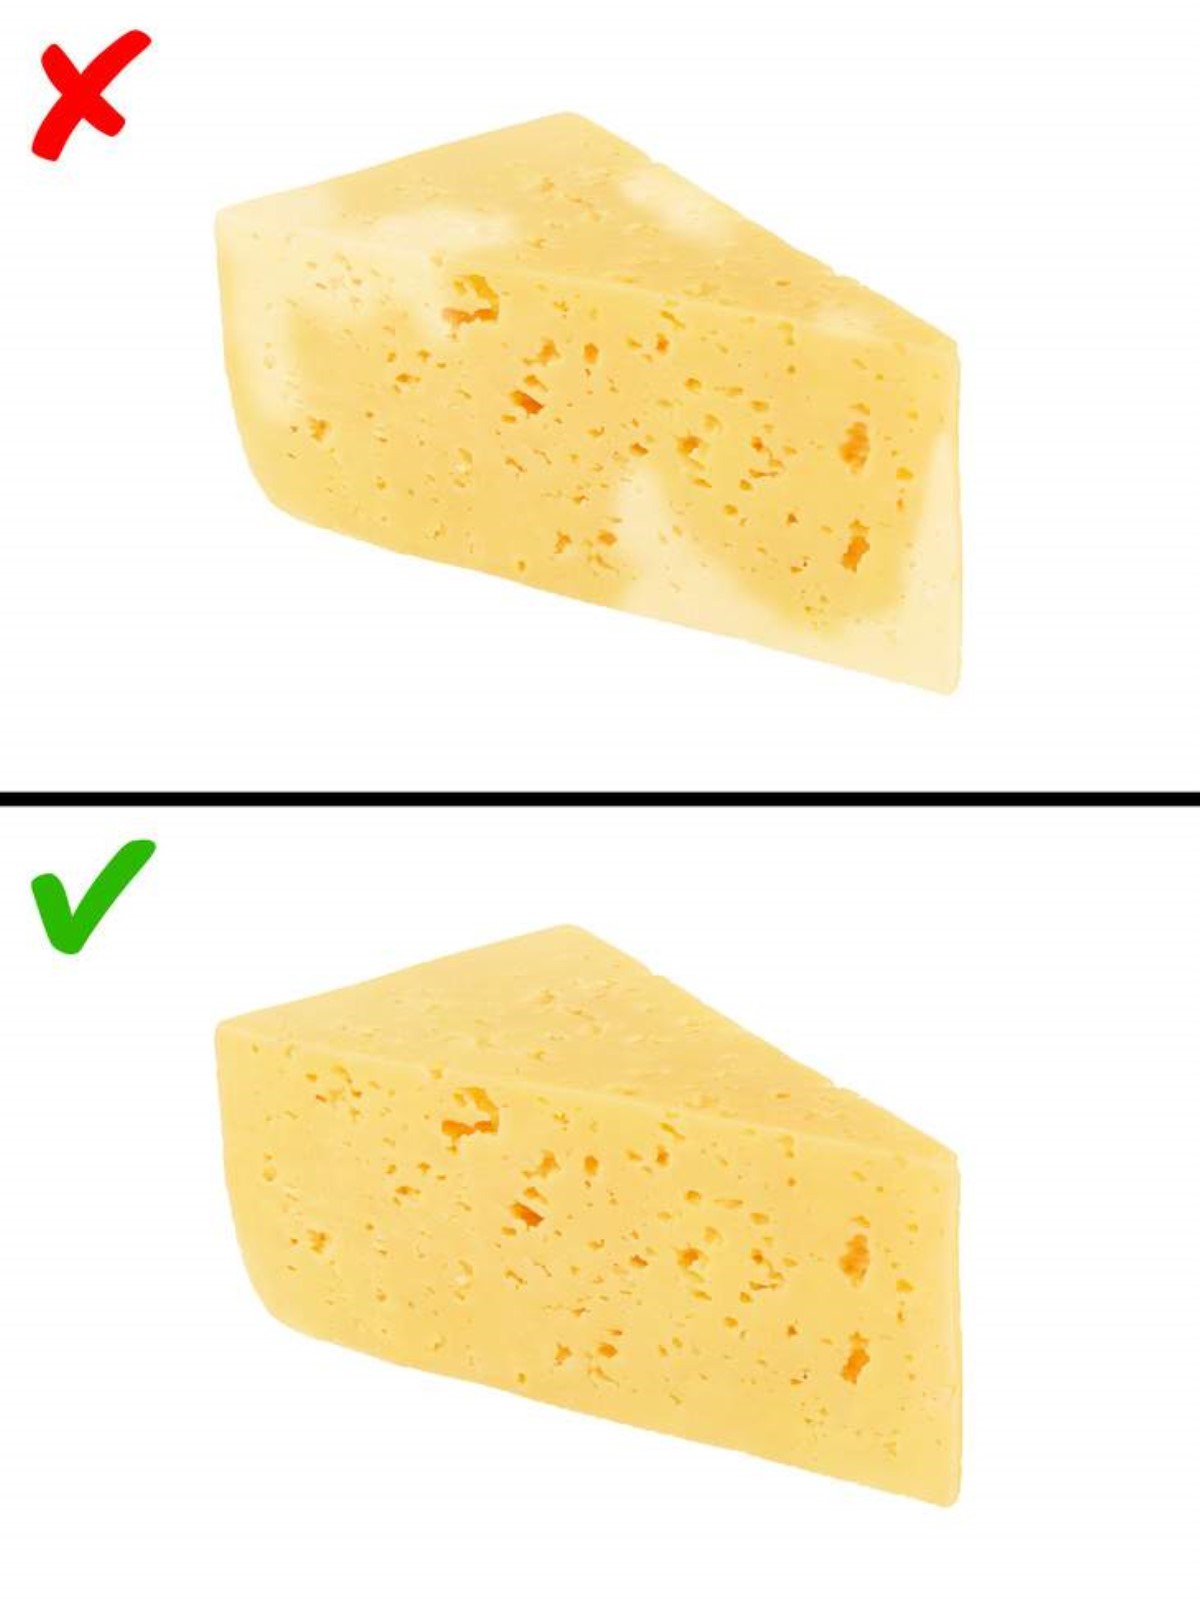 Как отличить сыр. Твердый сыр с плесенью. Сыр твердый. Сыр обычный. Правильный сыр.